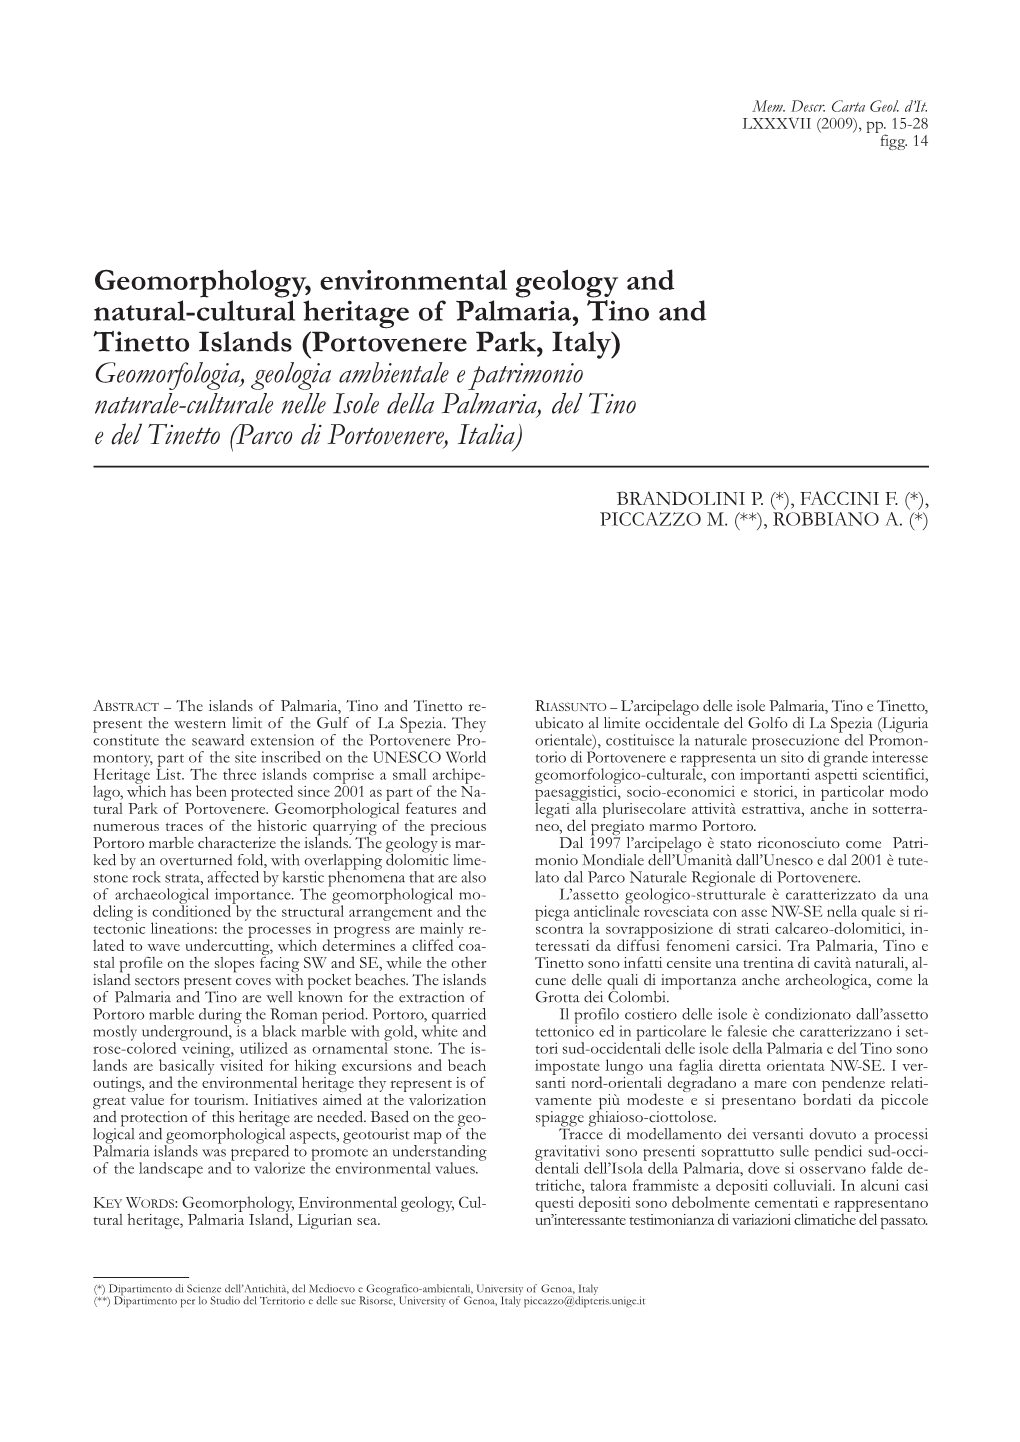 Geomorphology, Environmental Geology